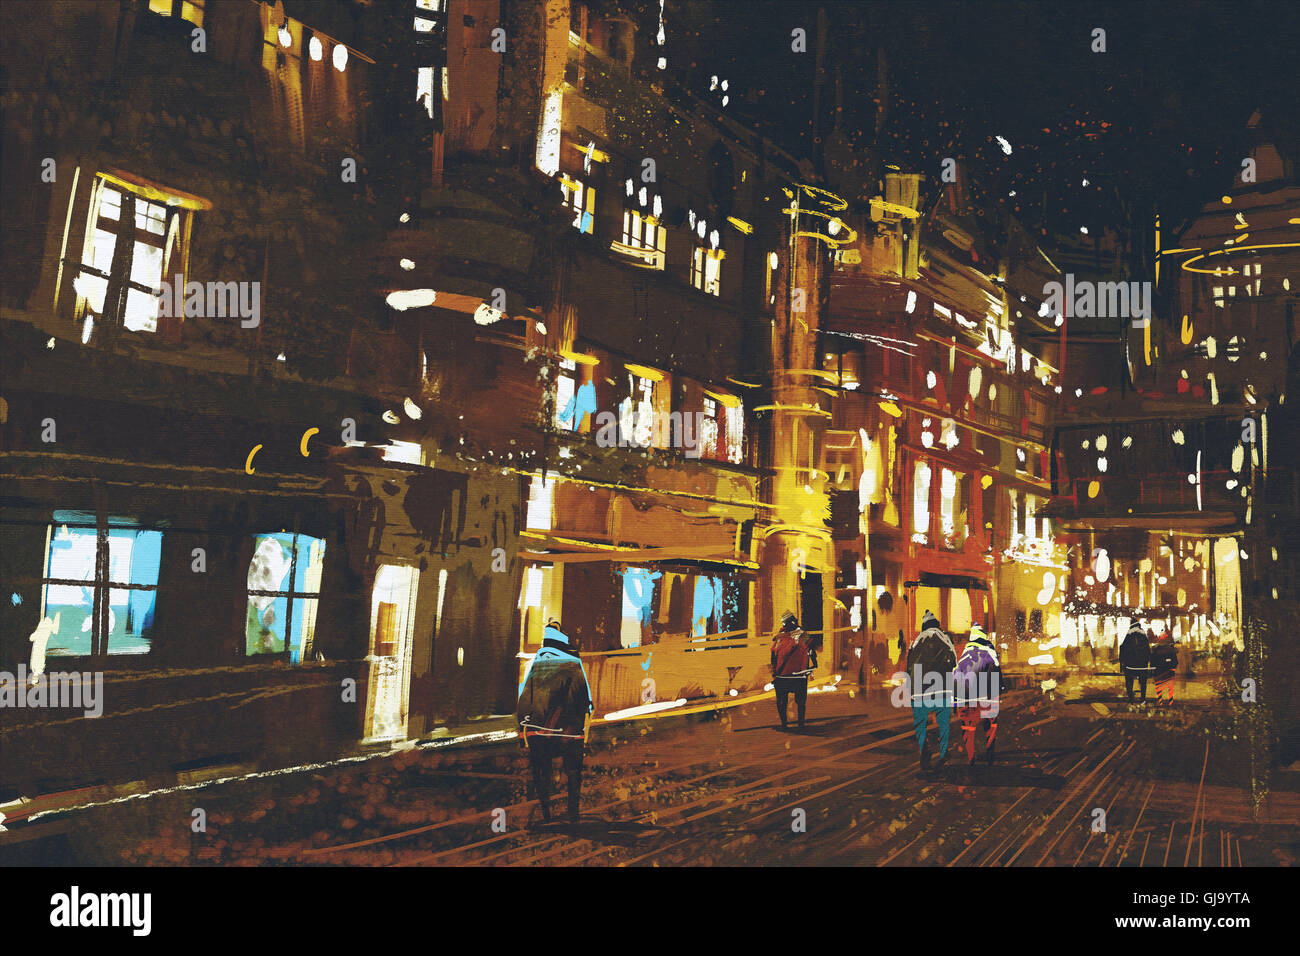 La pittura di strada notte,paesaggio urbano con luce colorata, Illustrazione tecnica Foto Stock